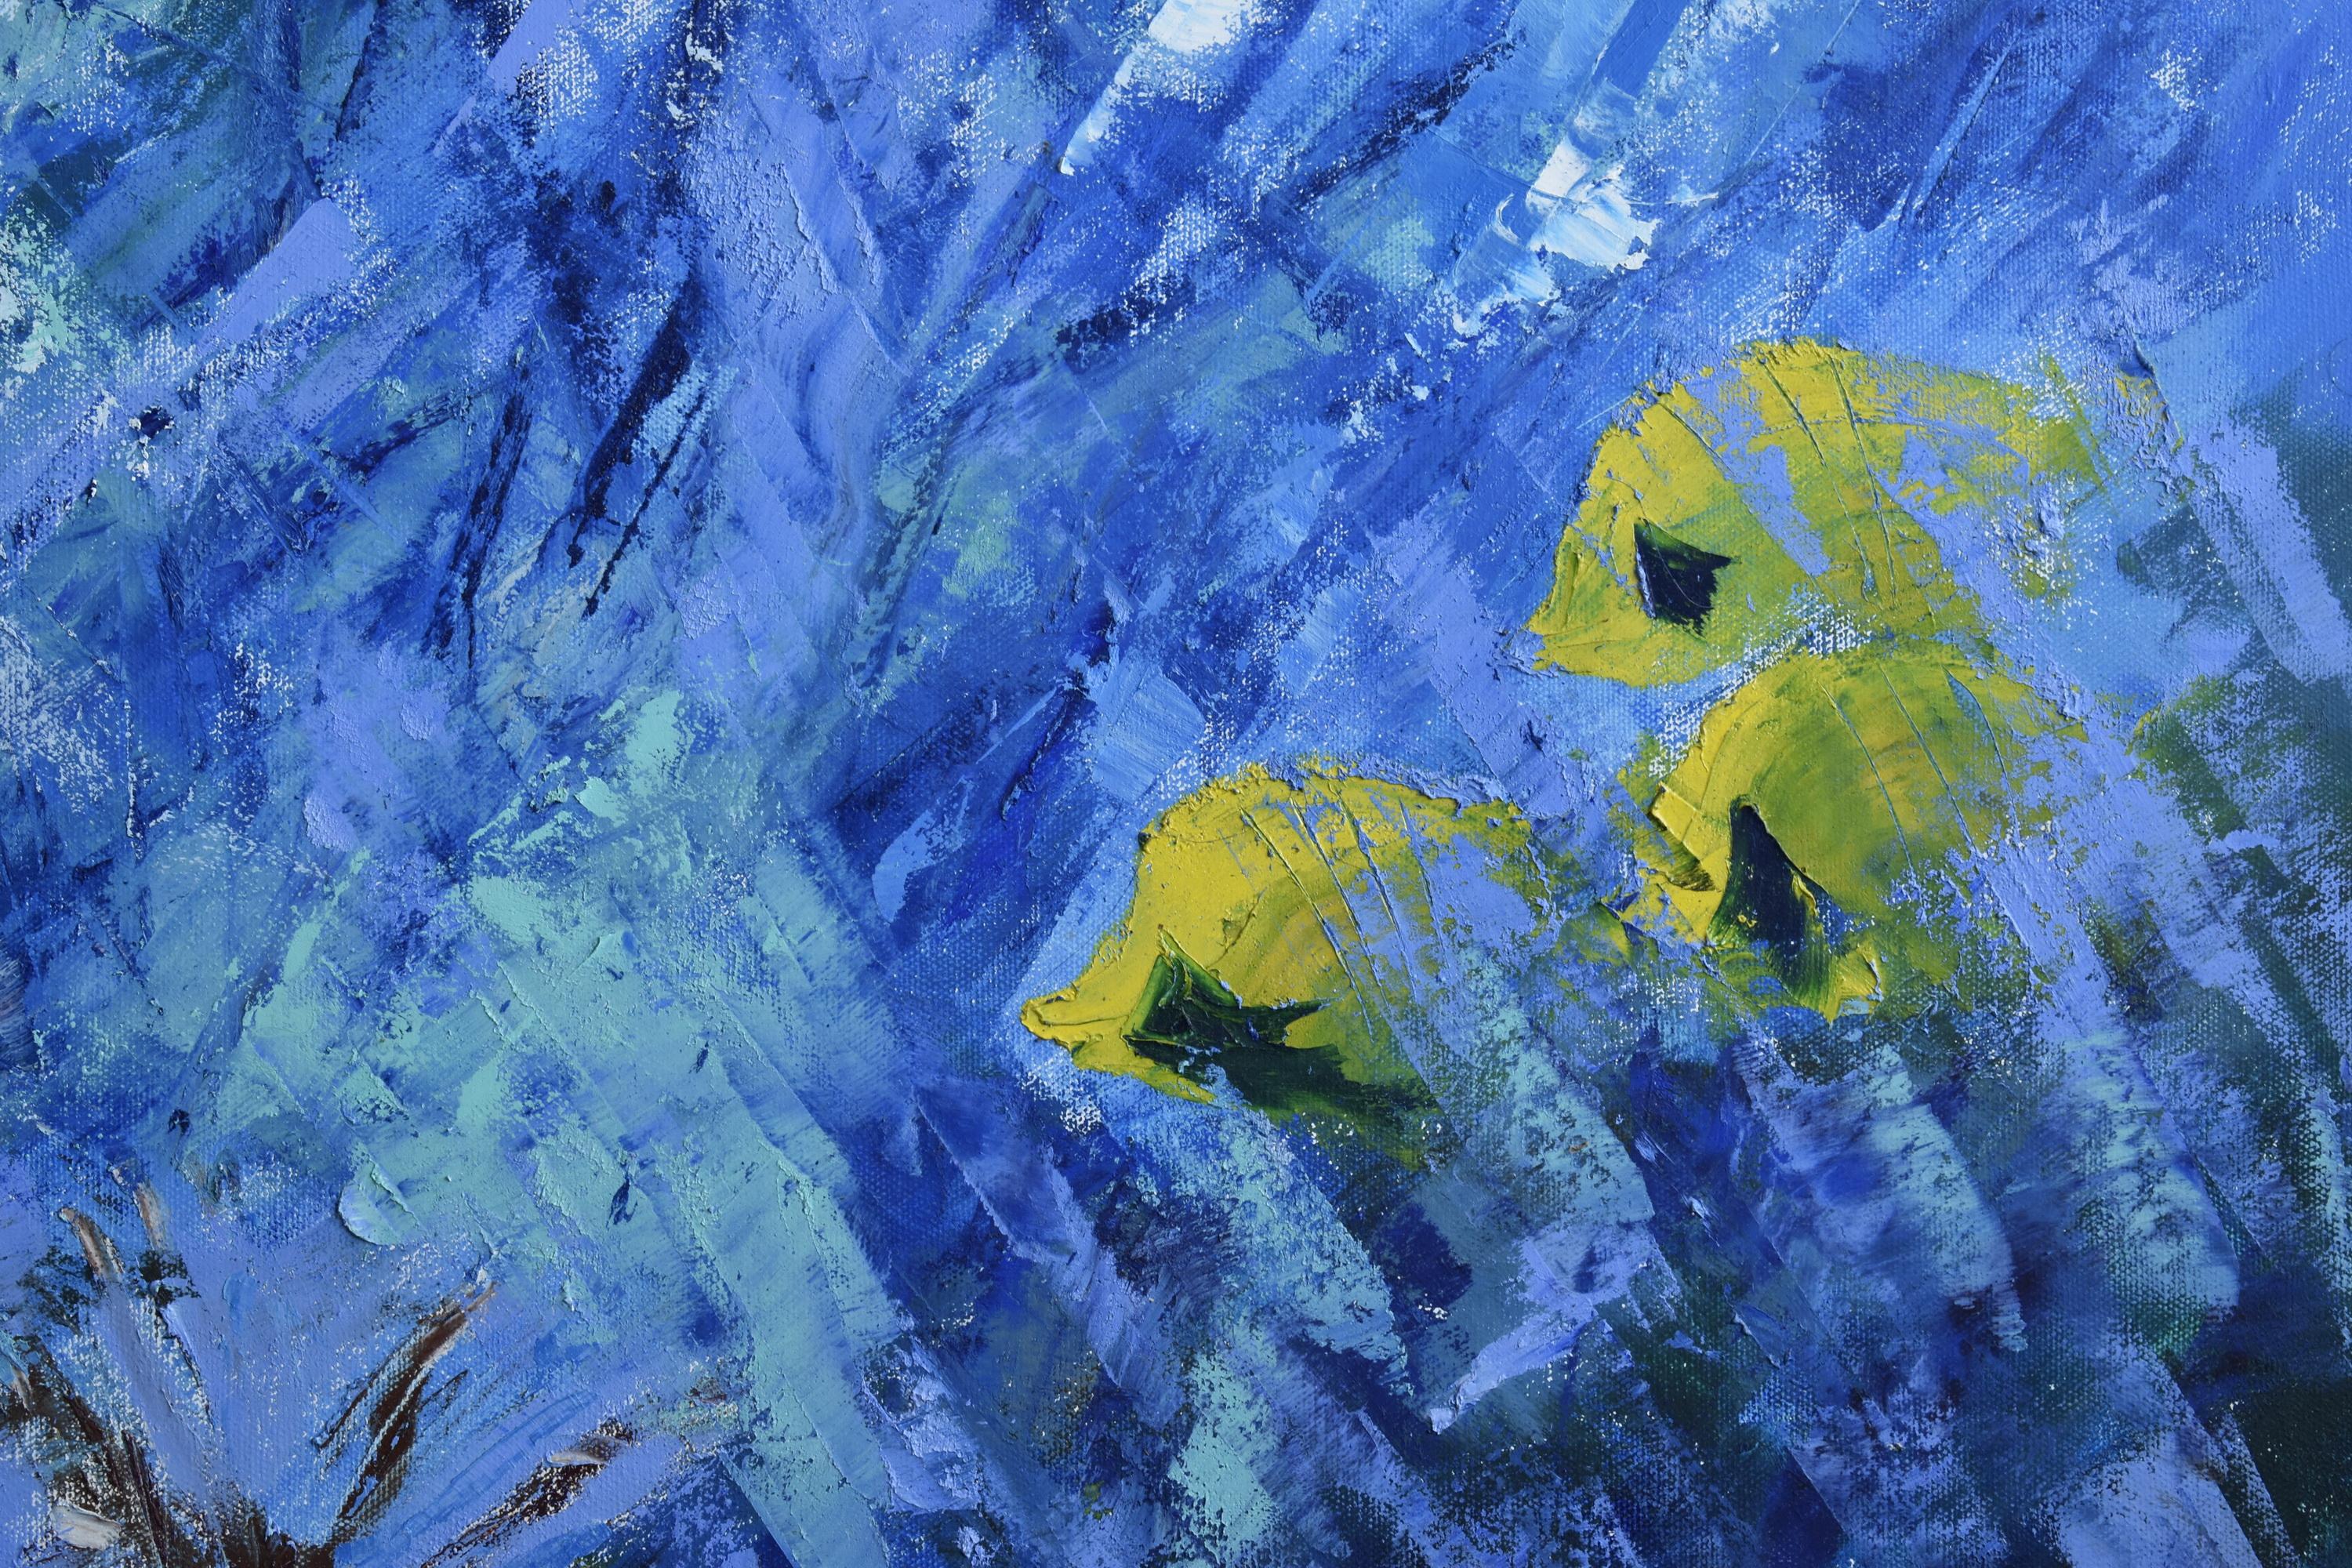 Seven Days Underwater entstand unter Wasser während des Tauchens in Tauchens (Abstrakter Expressionismus), Painting, von Olga Nikitina